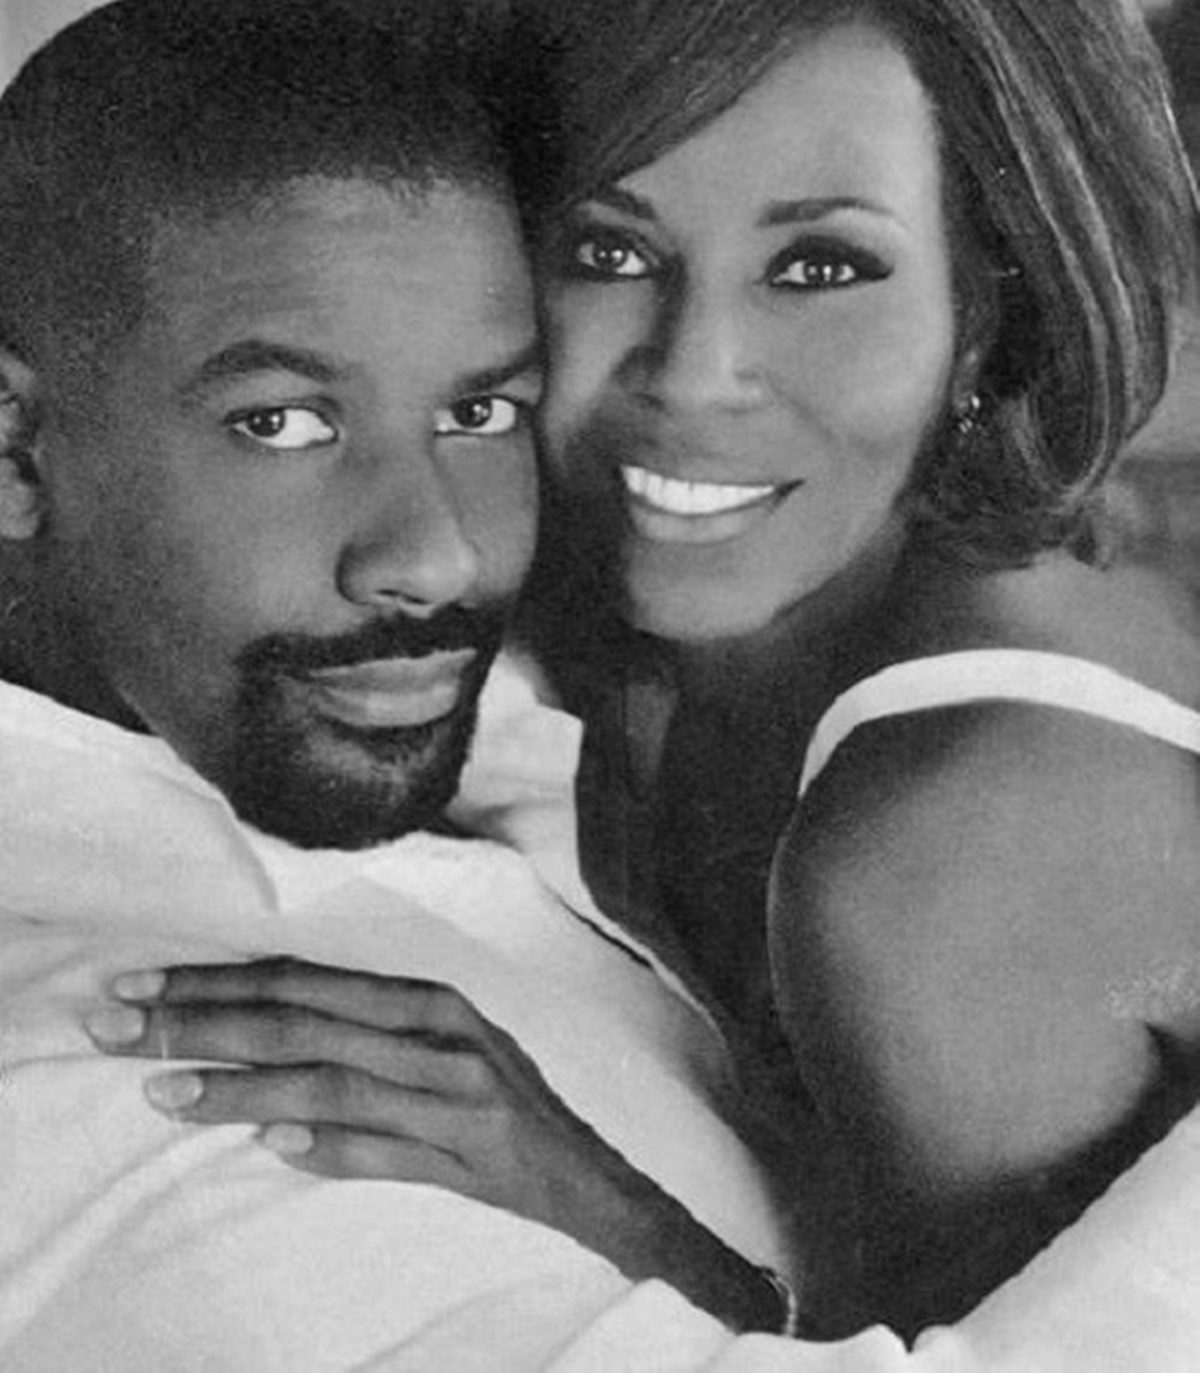 Közel 40 éve házas, felesége a házassági ajánlatot kétszer is elutasította - Denzel Washington elmeséli, mi is az igazi kitartás